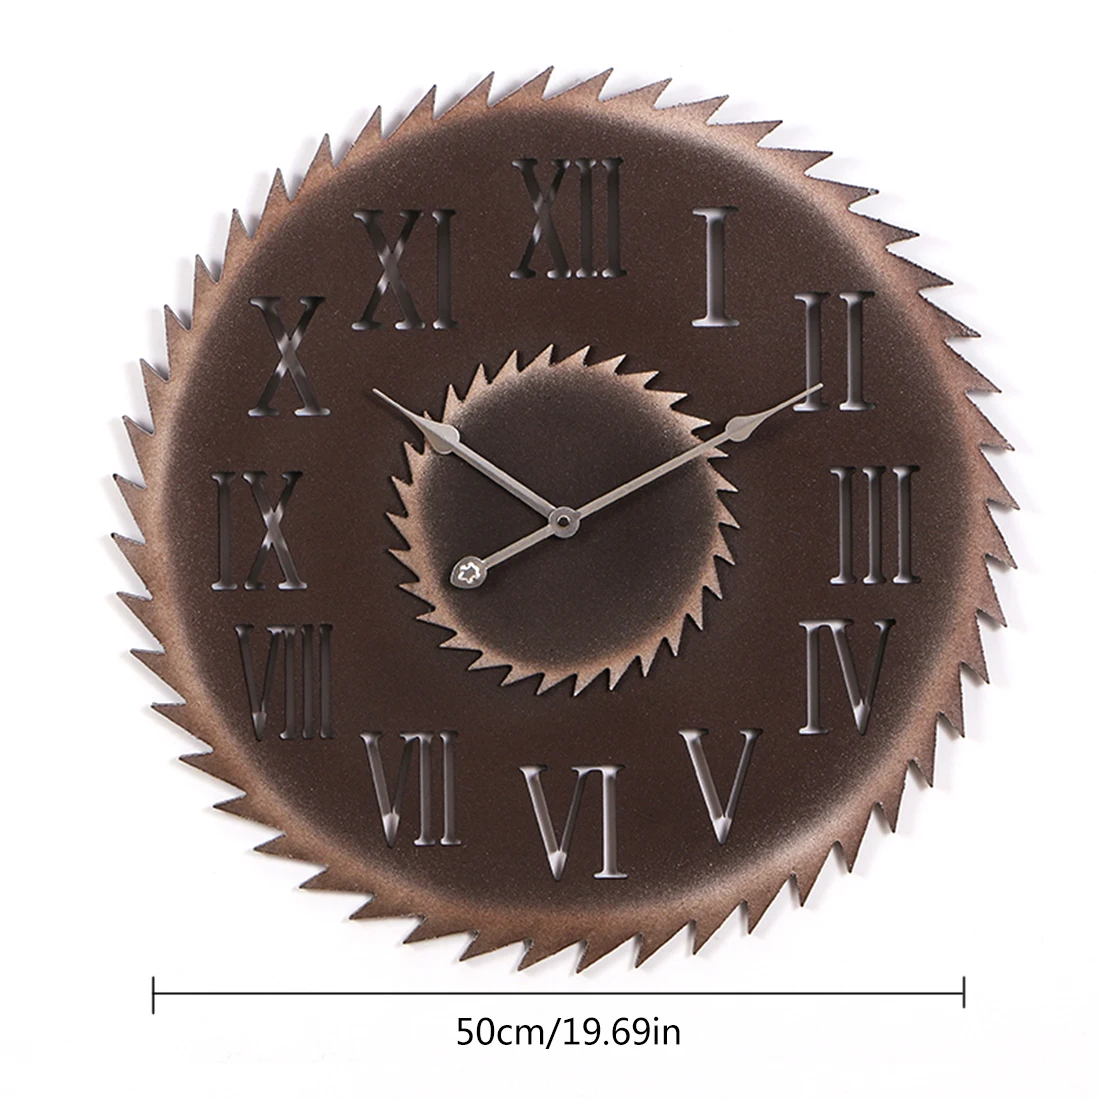 Новые Ретро стиль большие настенные часы в винтажном стиле имитация металла пильный диск арабские цифры немой вешалки часы домашний офис Кафе Декор